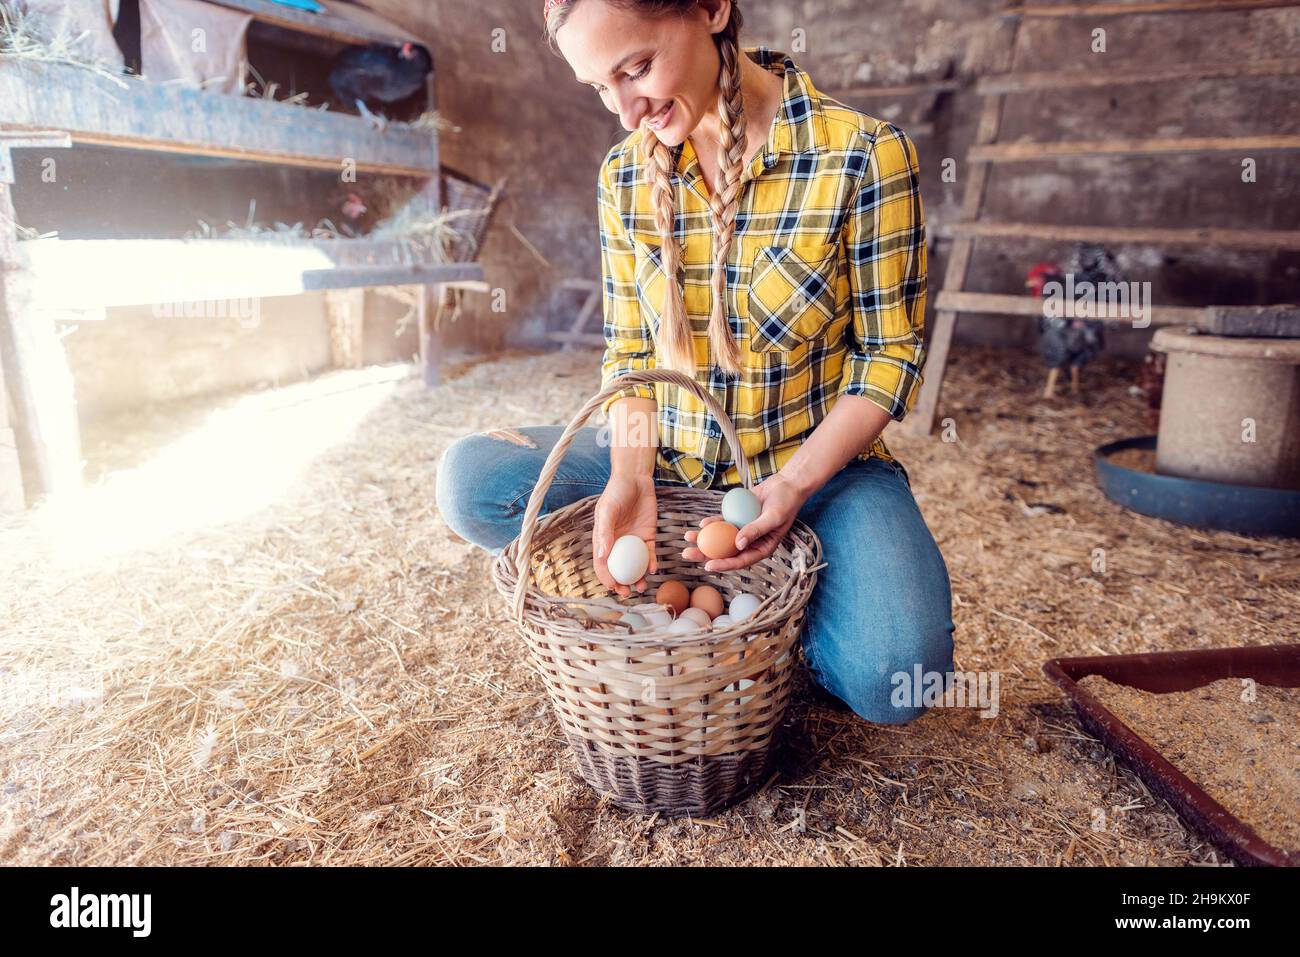 Die Farmerin legte Hühnereier in ihren Korb, nachdem sie sie gesammelt hatten Stockfoto